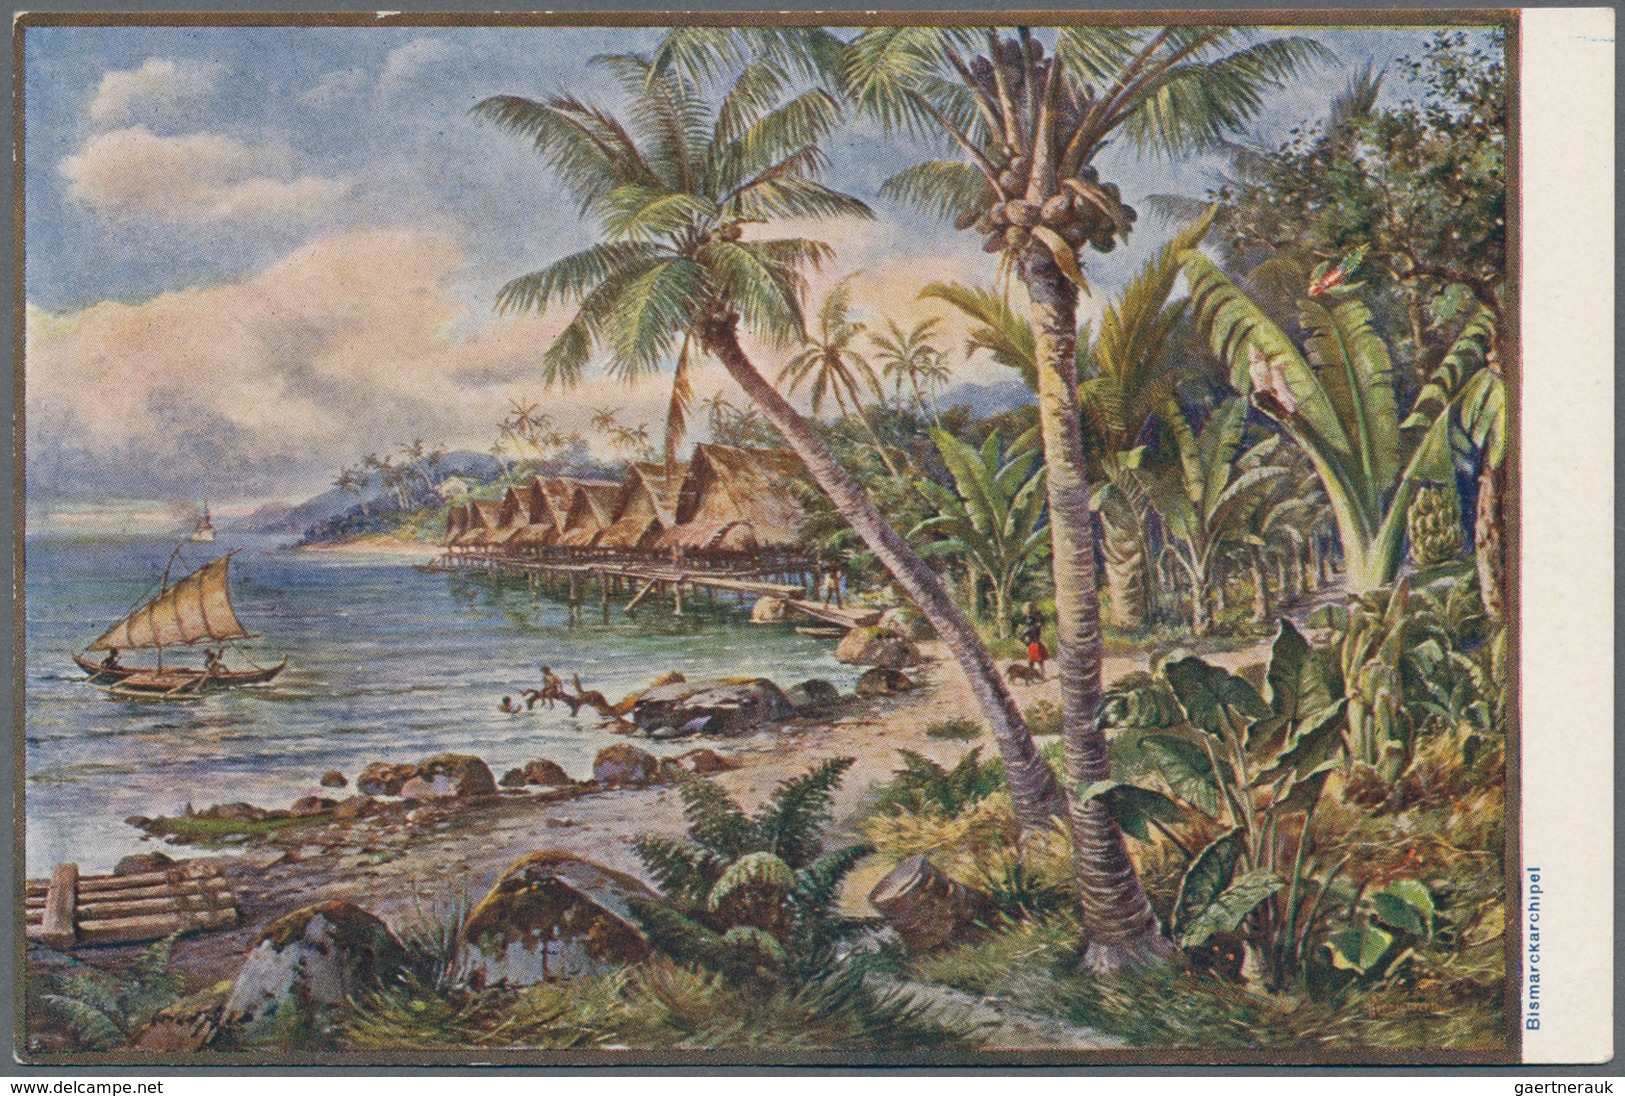 Deutsch-Neuguinea - Ganzsachen: 1898/1915, Album Mit 48 Ganzsachenpostkarten Ab P 1, Davon 35 Ungebr - Nouvelle-Guinée